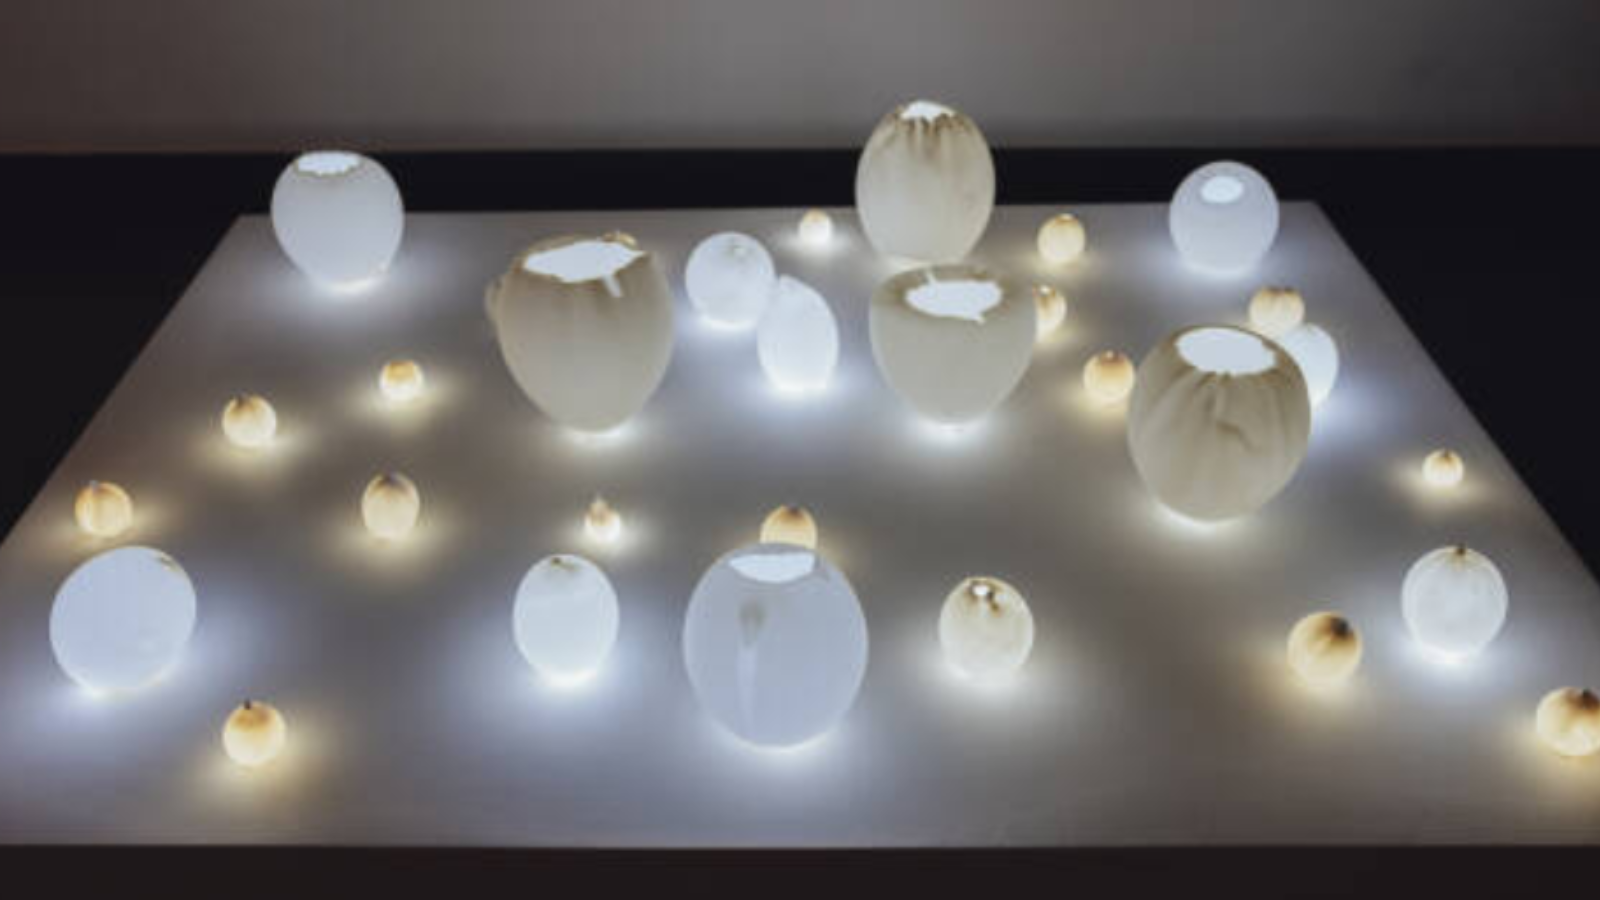 Fotografía de una de las obras expuestas, que juega con el material cerámico y la luz, a modo de candelas